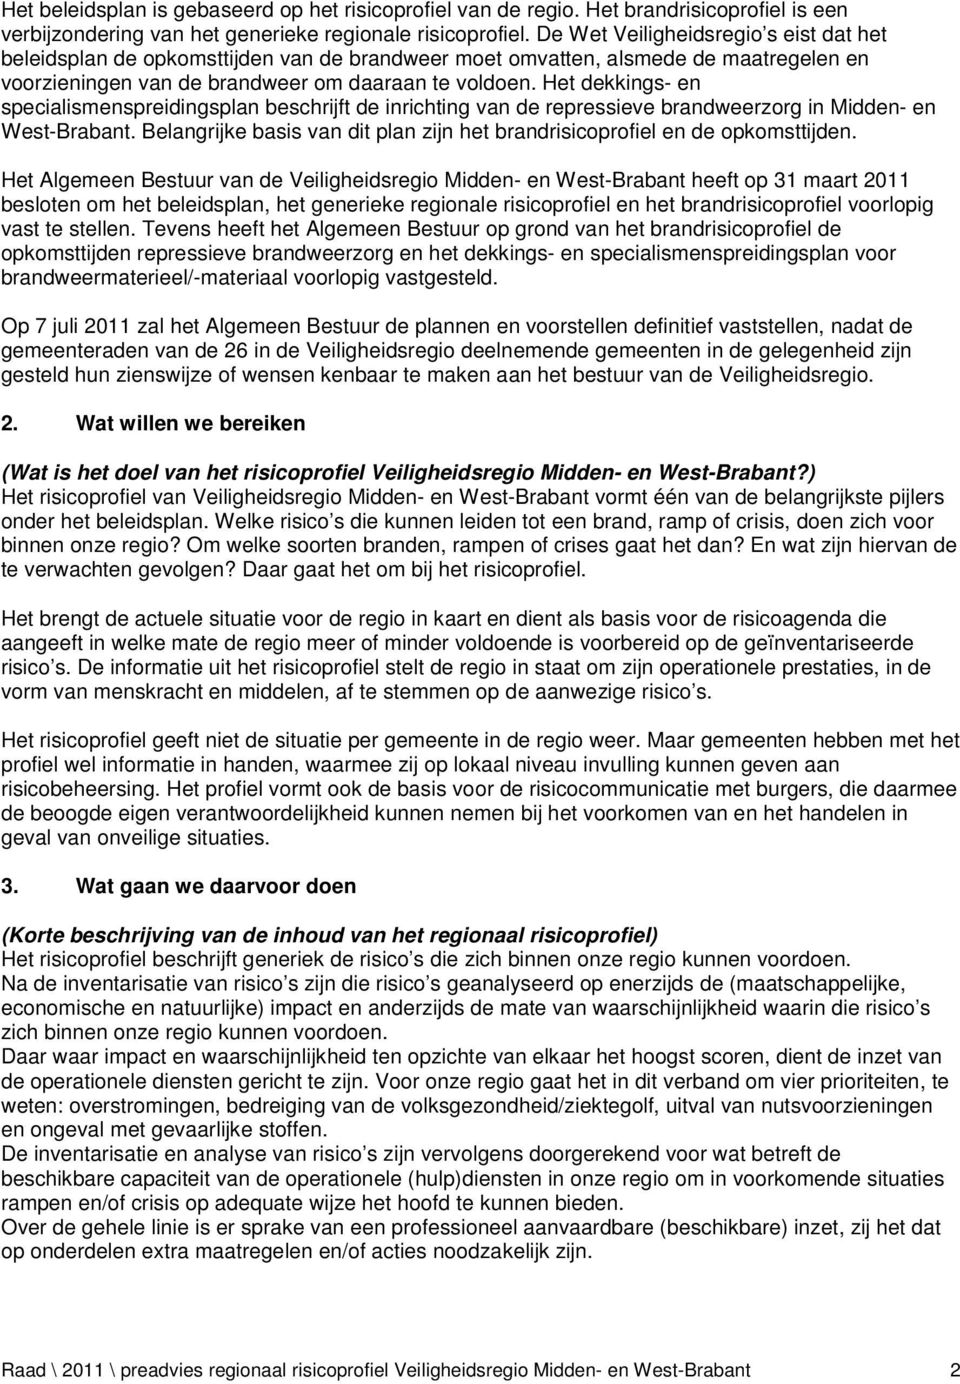 Het dekkings- en specialismenspreidingsplan beschrijft de inrichting van de repressieve brandweerzorg in Midden- en West-Brabant.